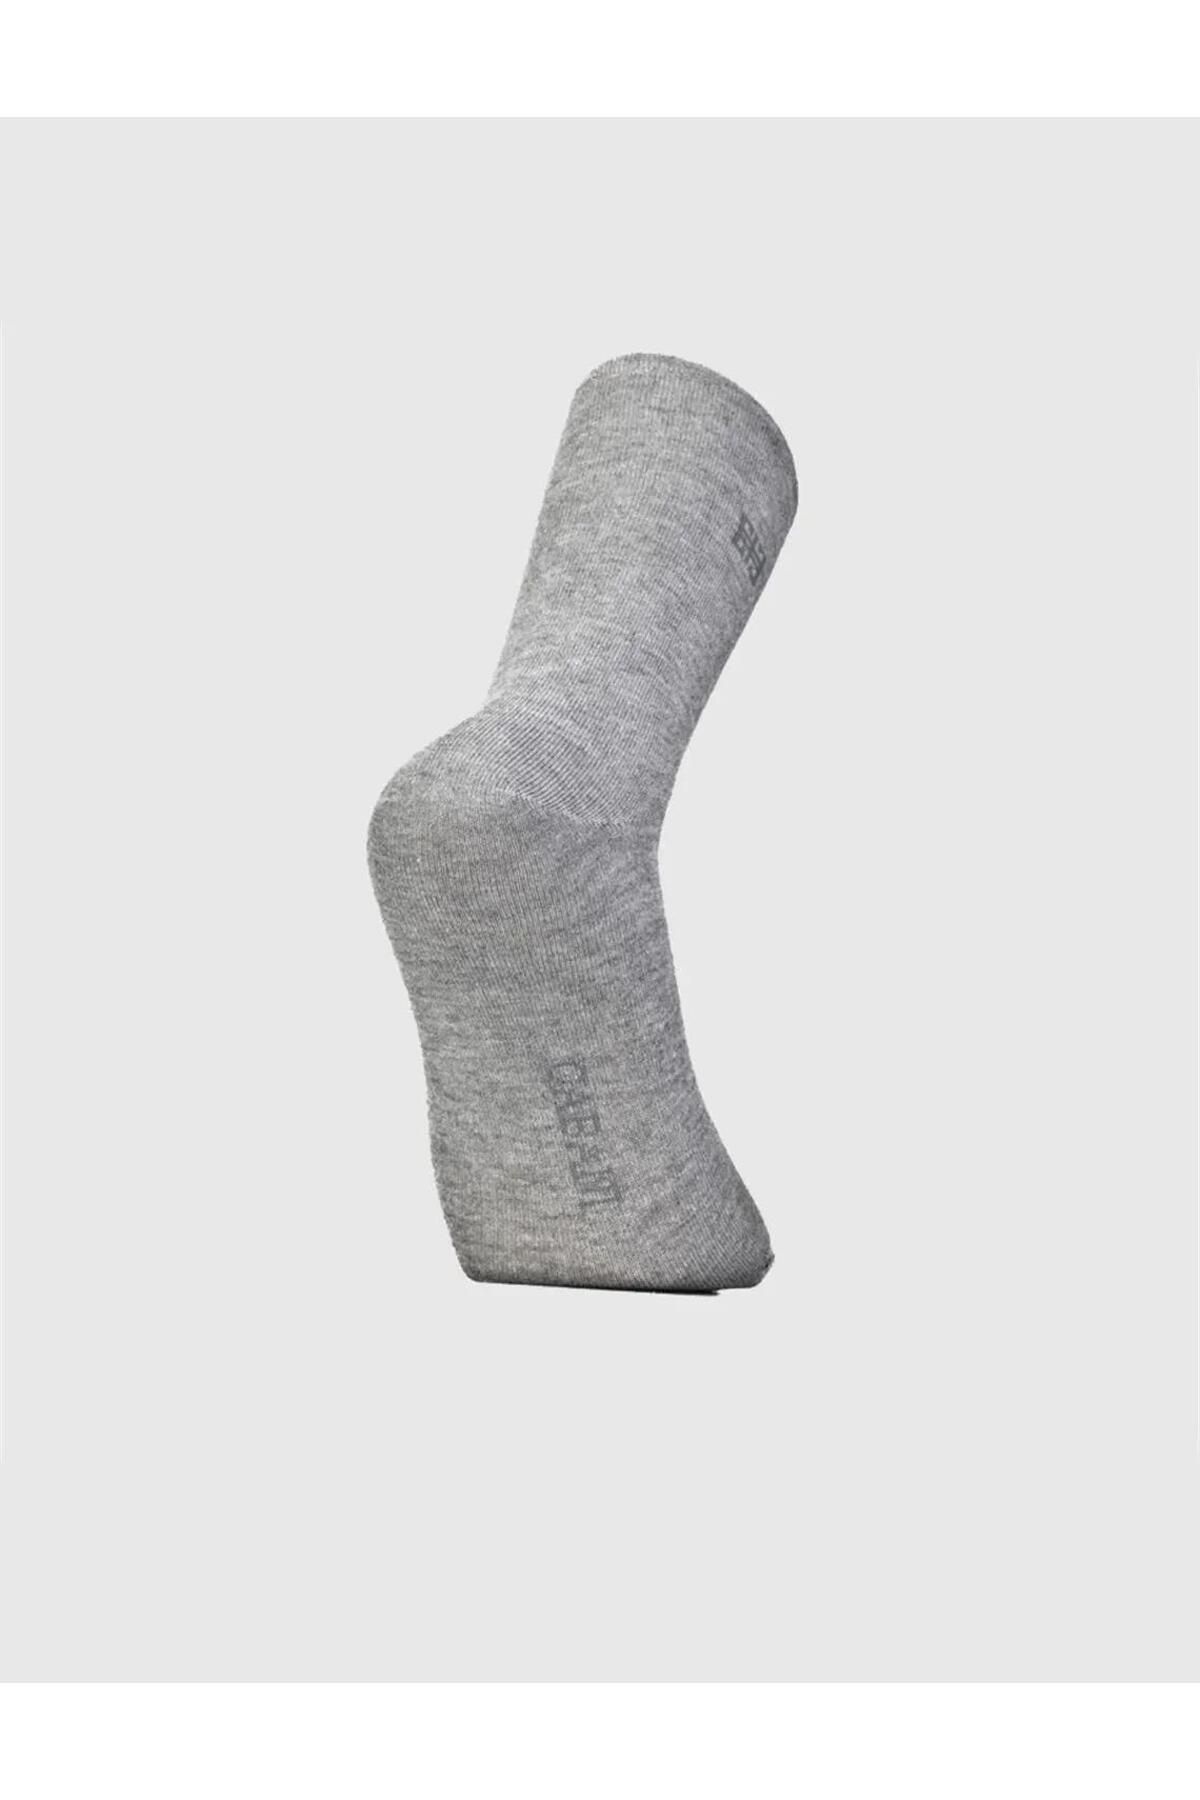 Cabani جورابهای مردانه خاکستری